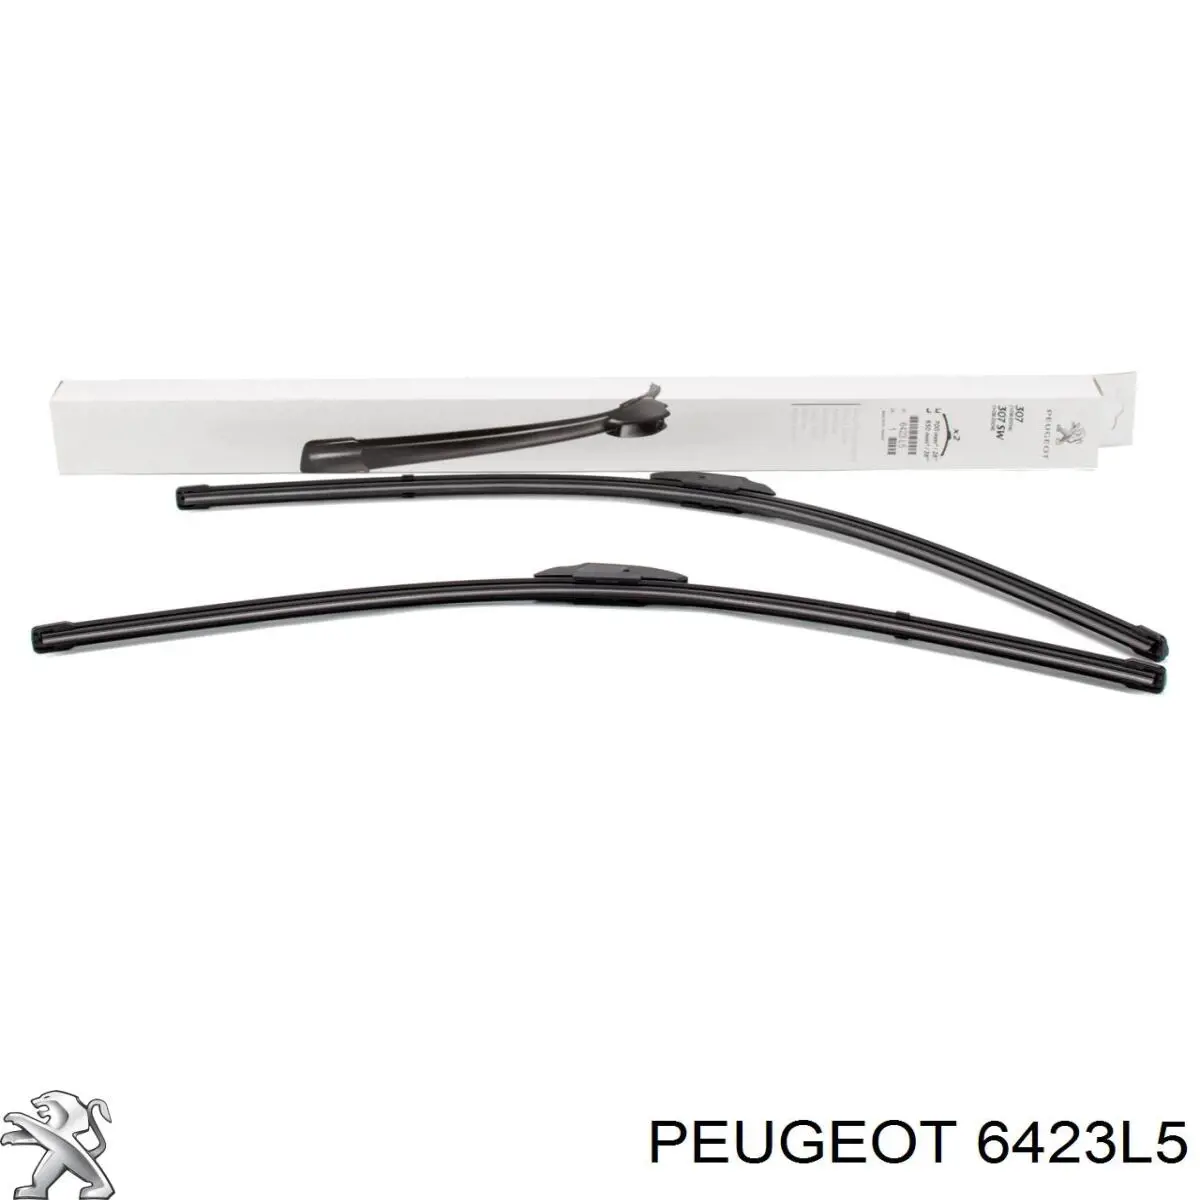 6423L5 Peugeot/Citroen щетка-дворник лобового стекла, комплект из 2 шт.